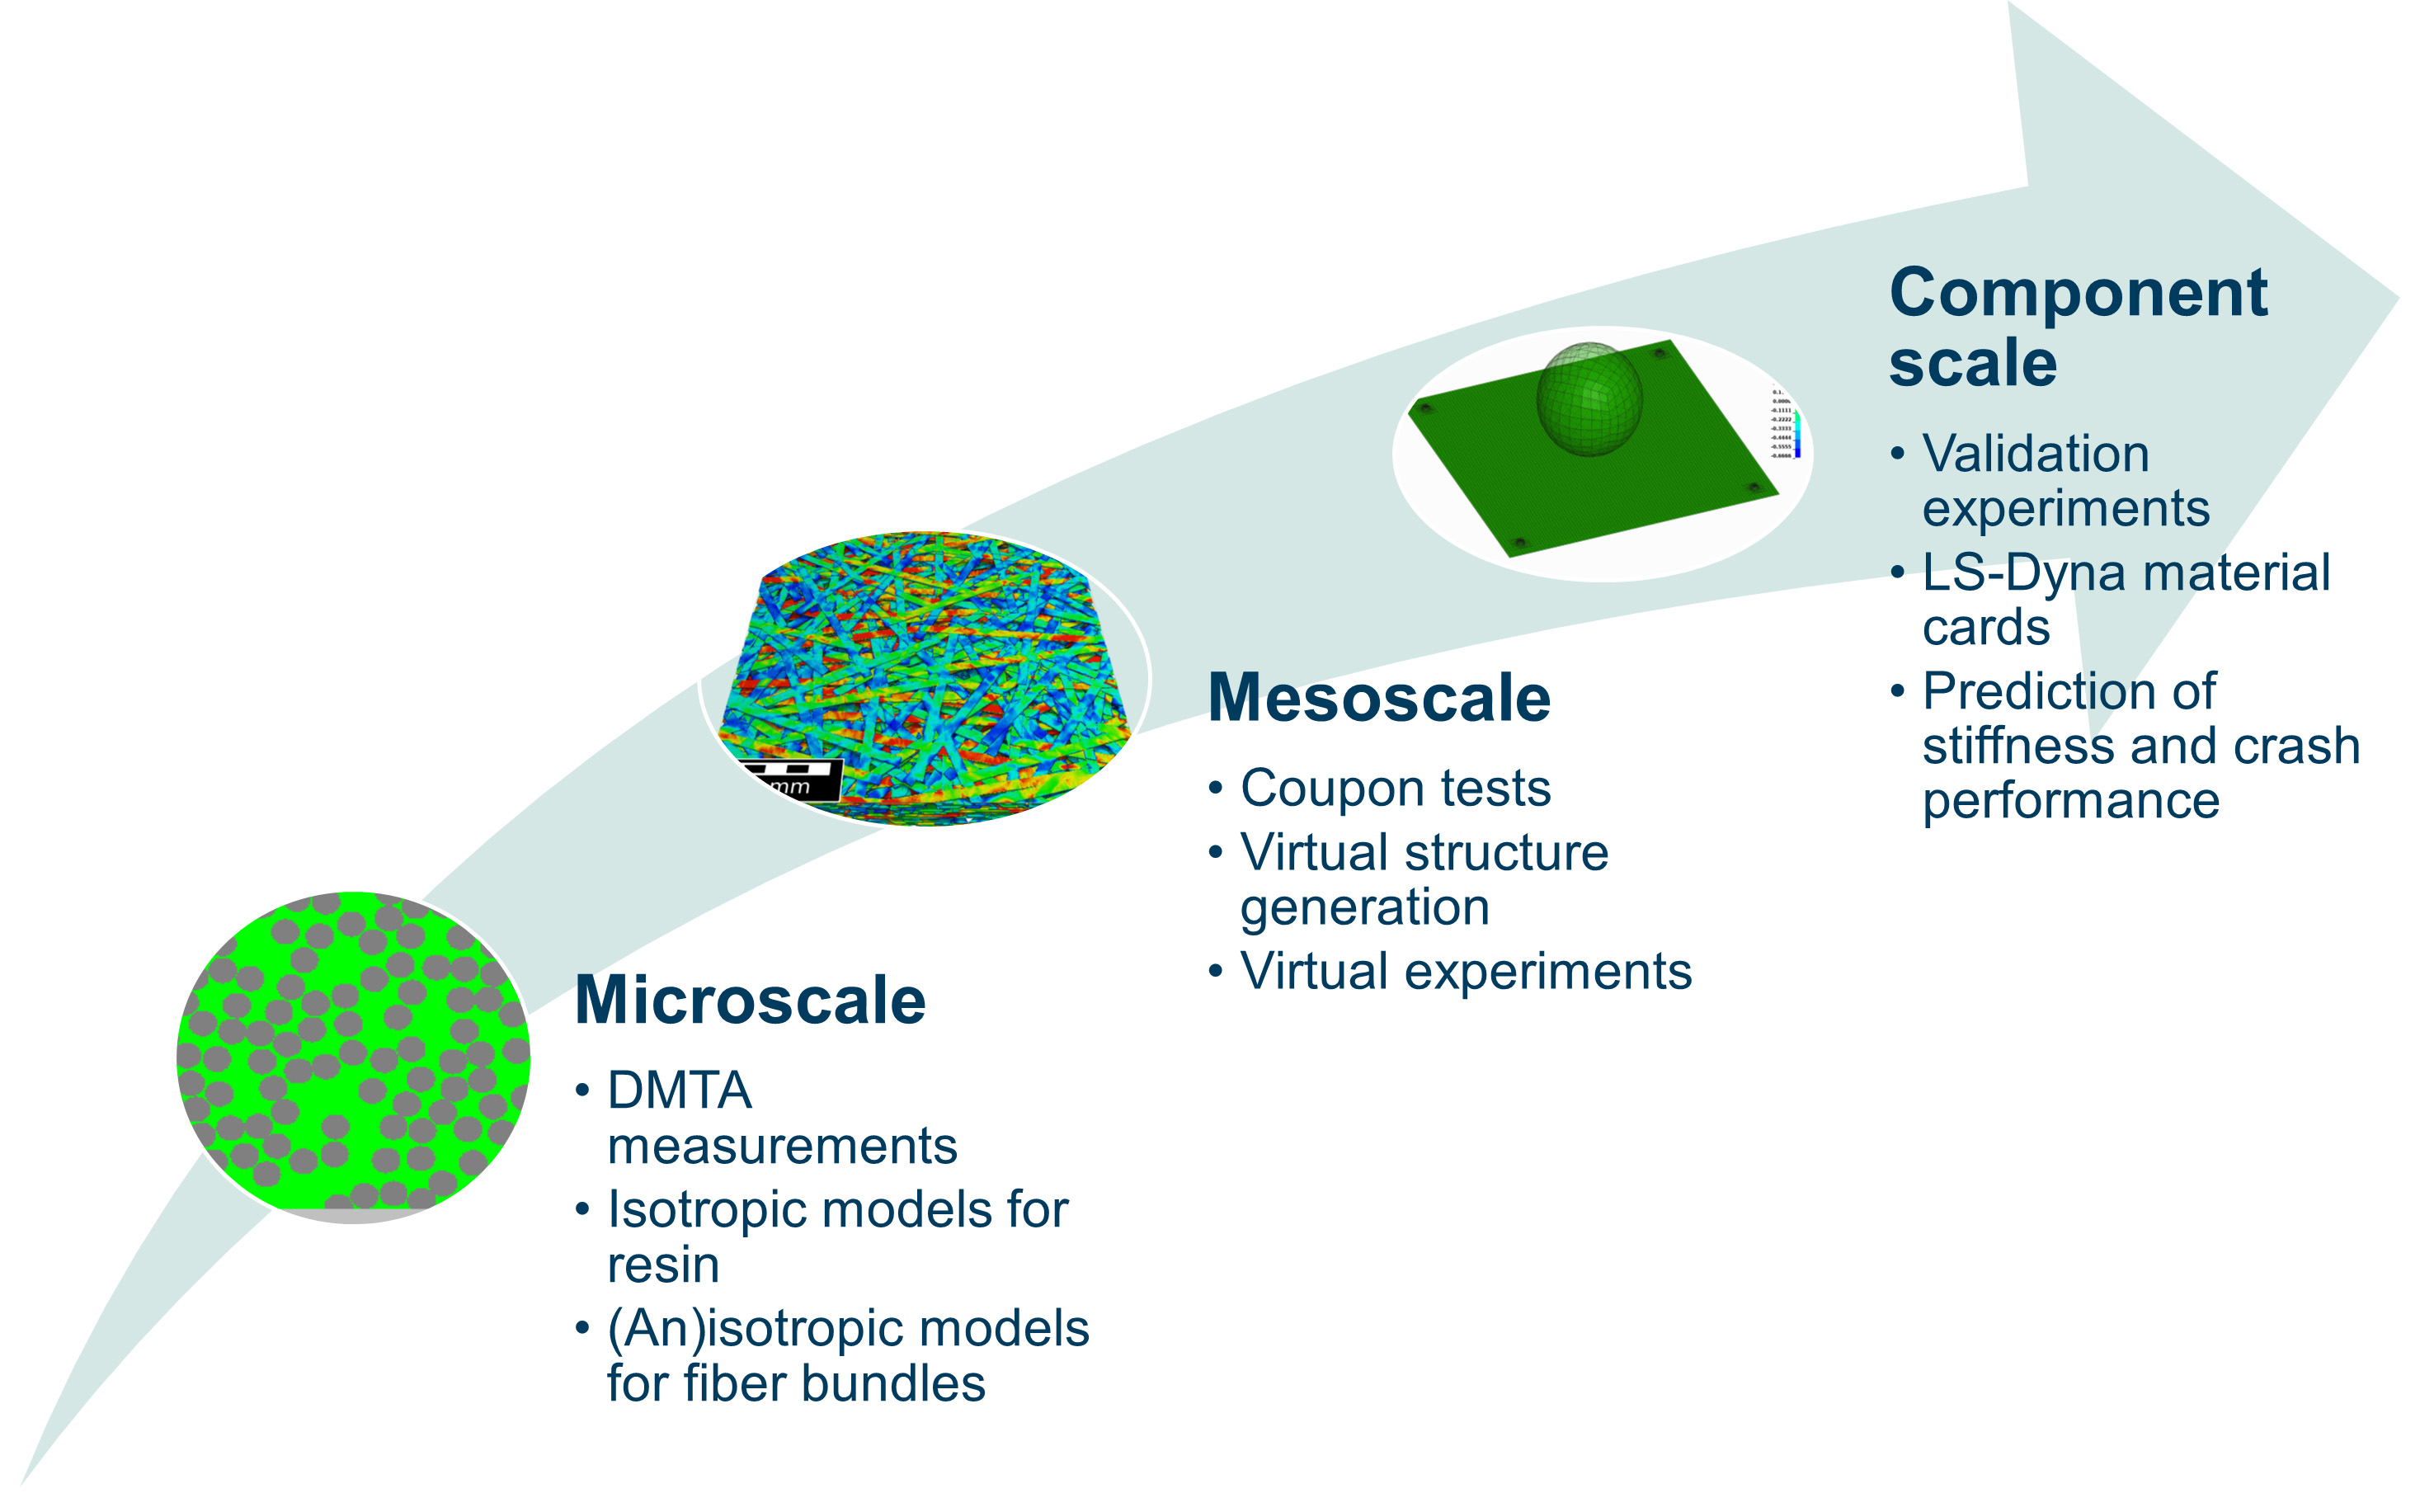 Multiskalenmethodik: Von der Mikroskala über die Mesoskala bishin zur Leichtbau-Komponente